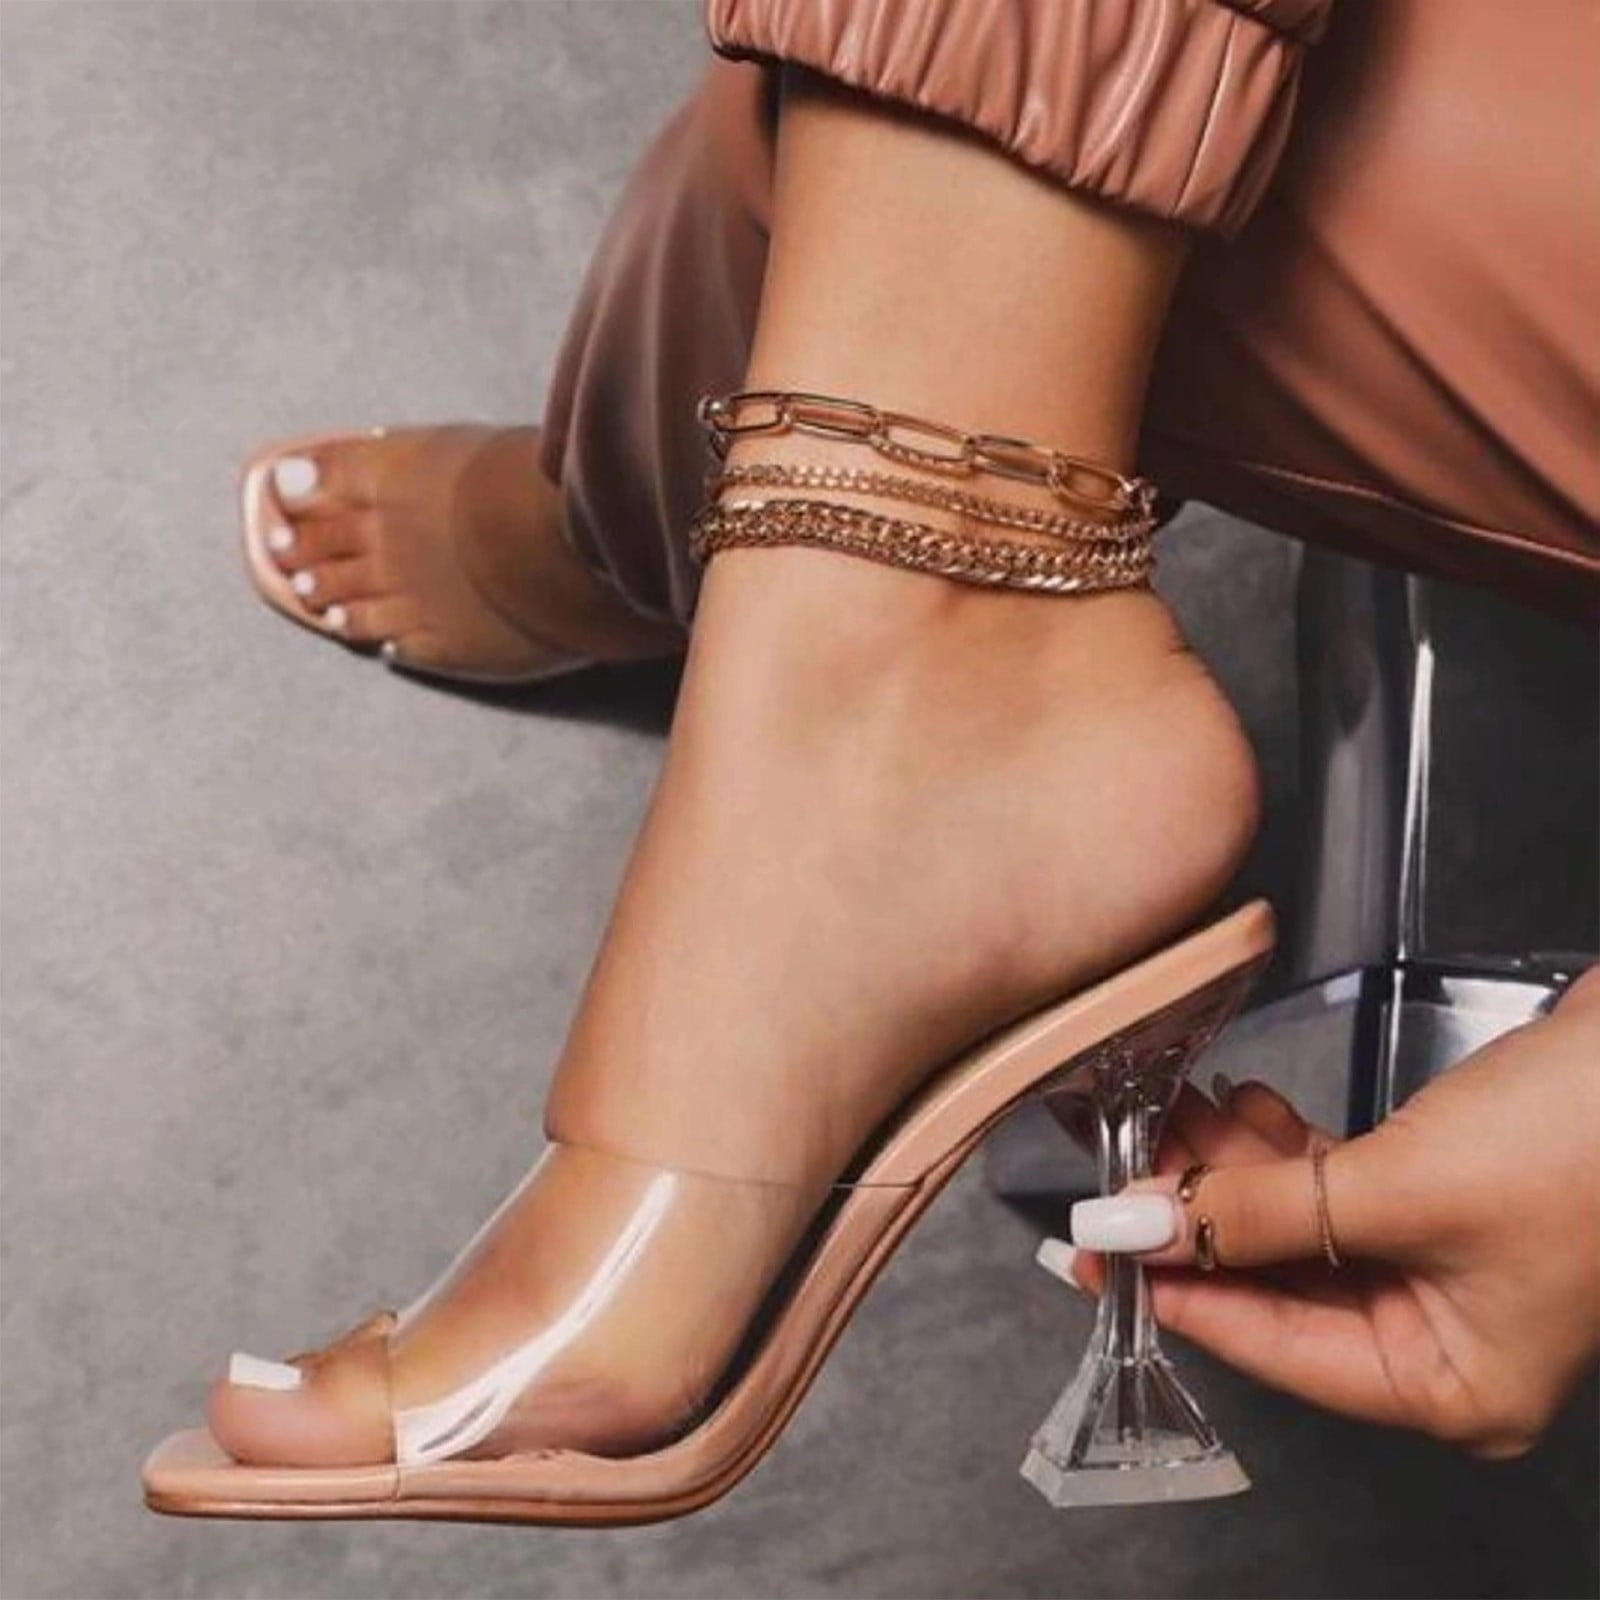 Women's Shoes Transparent Heel, Women's Transparent Sandals